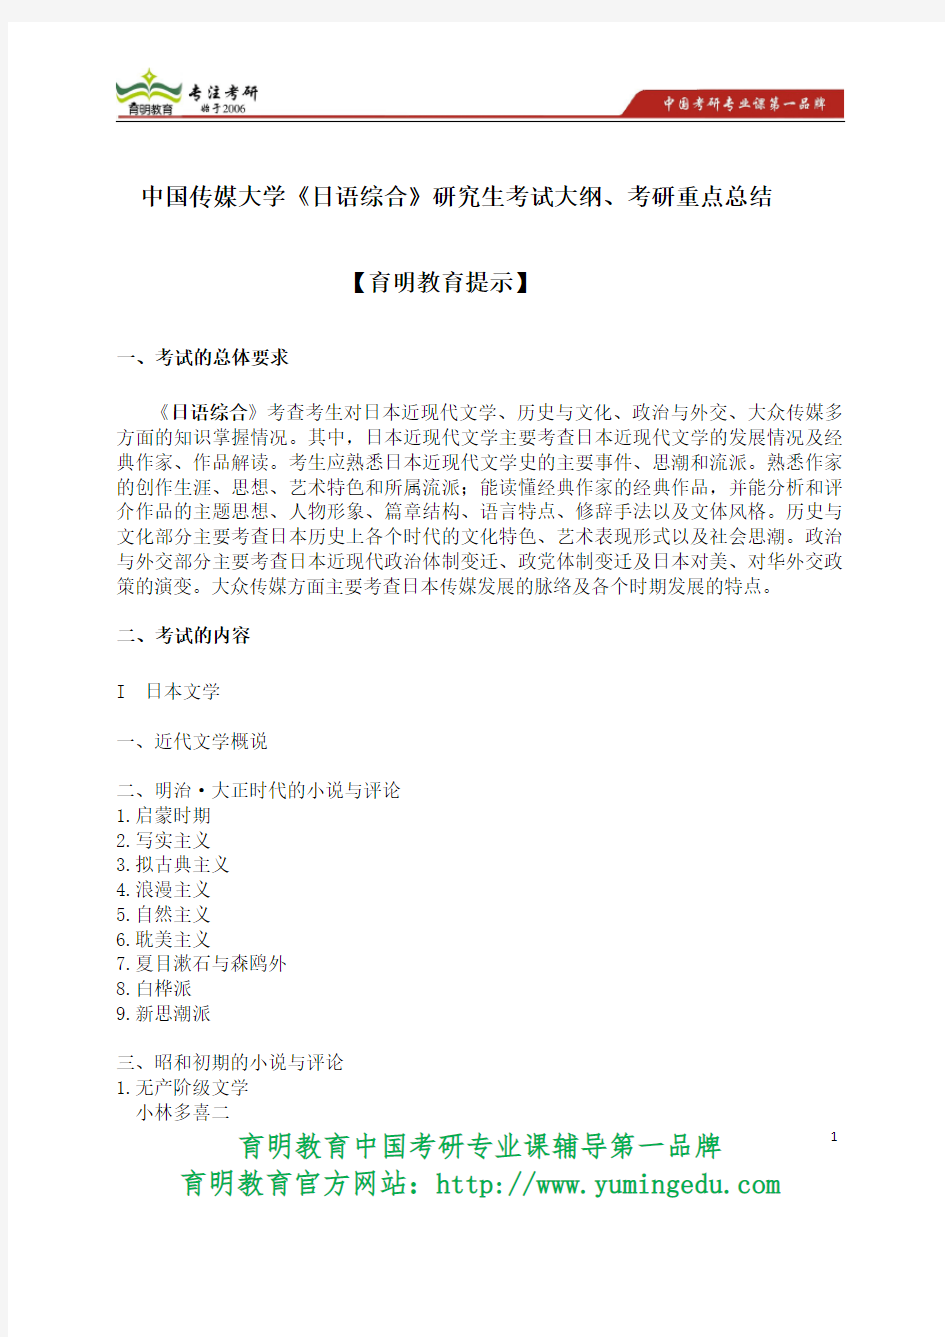 2015年中国传媒大学《日语综合》研究生考试大纲、考研重点总结